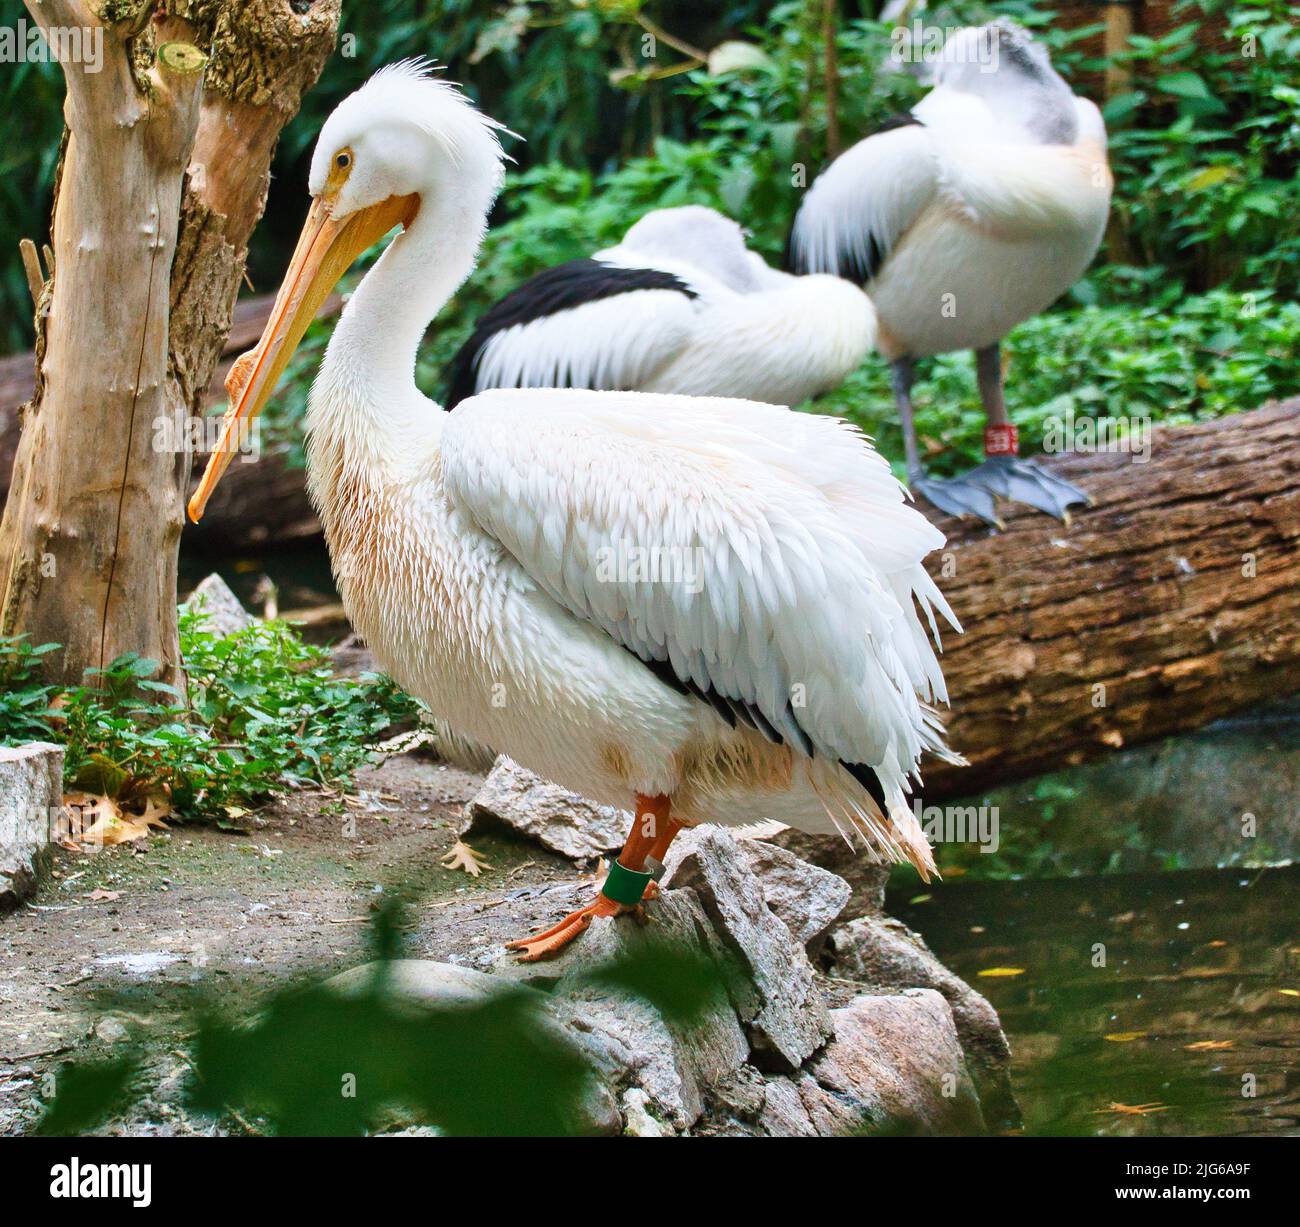 Pelican im Porträt. Weißes Gefieder, großer Schnabel, in einem großen Meeresvögel. Tierfoto Stockfoto